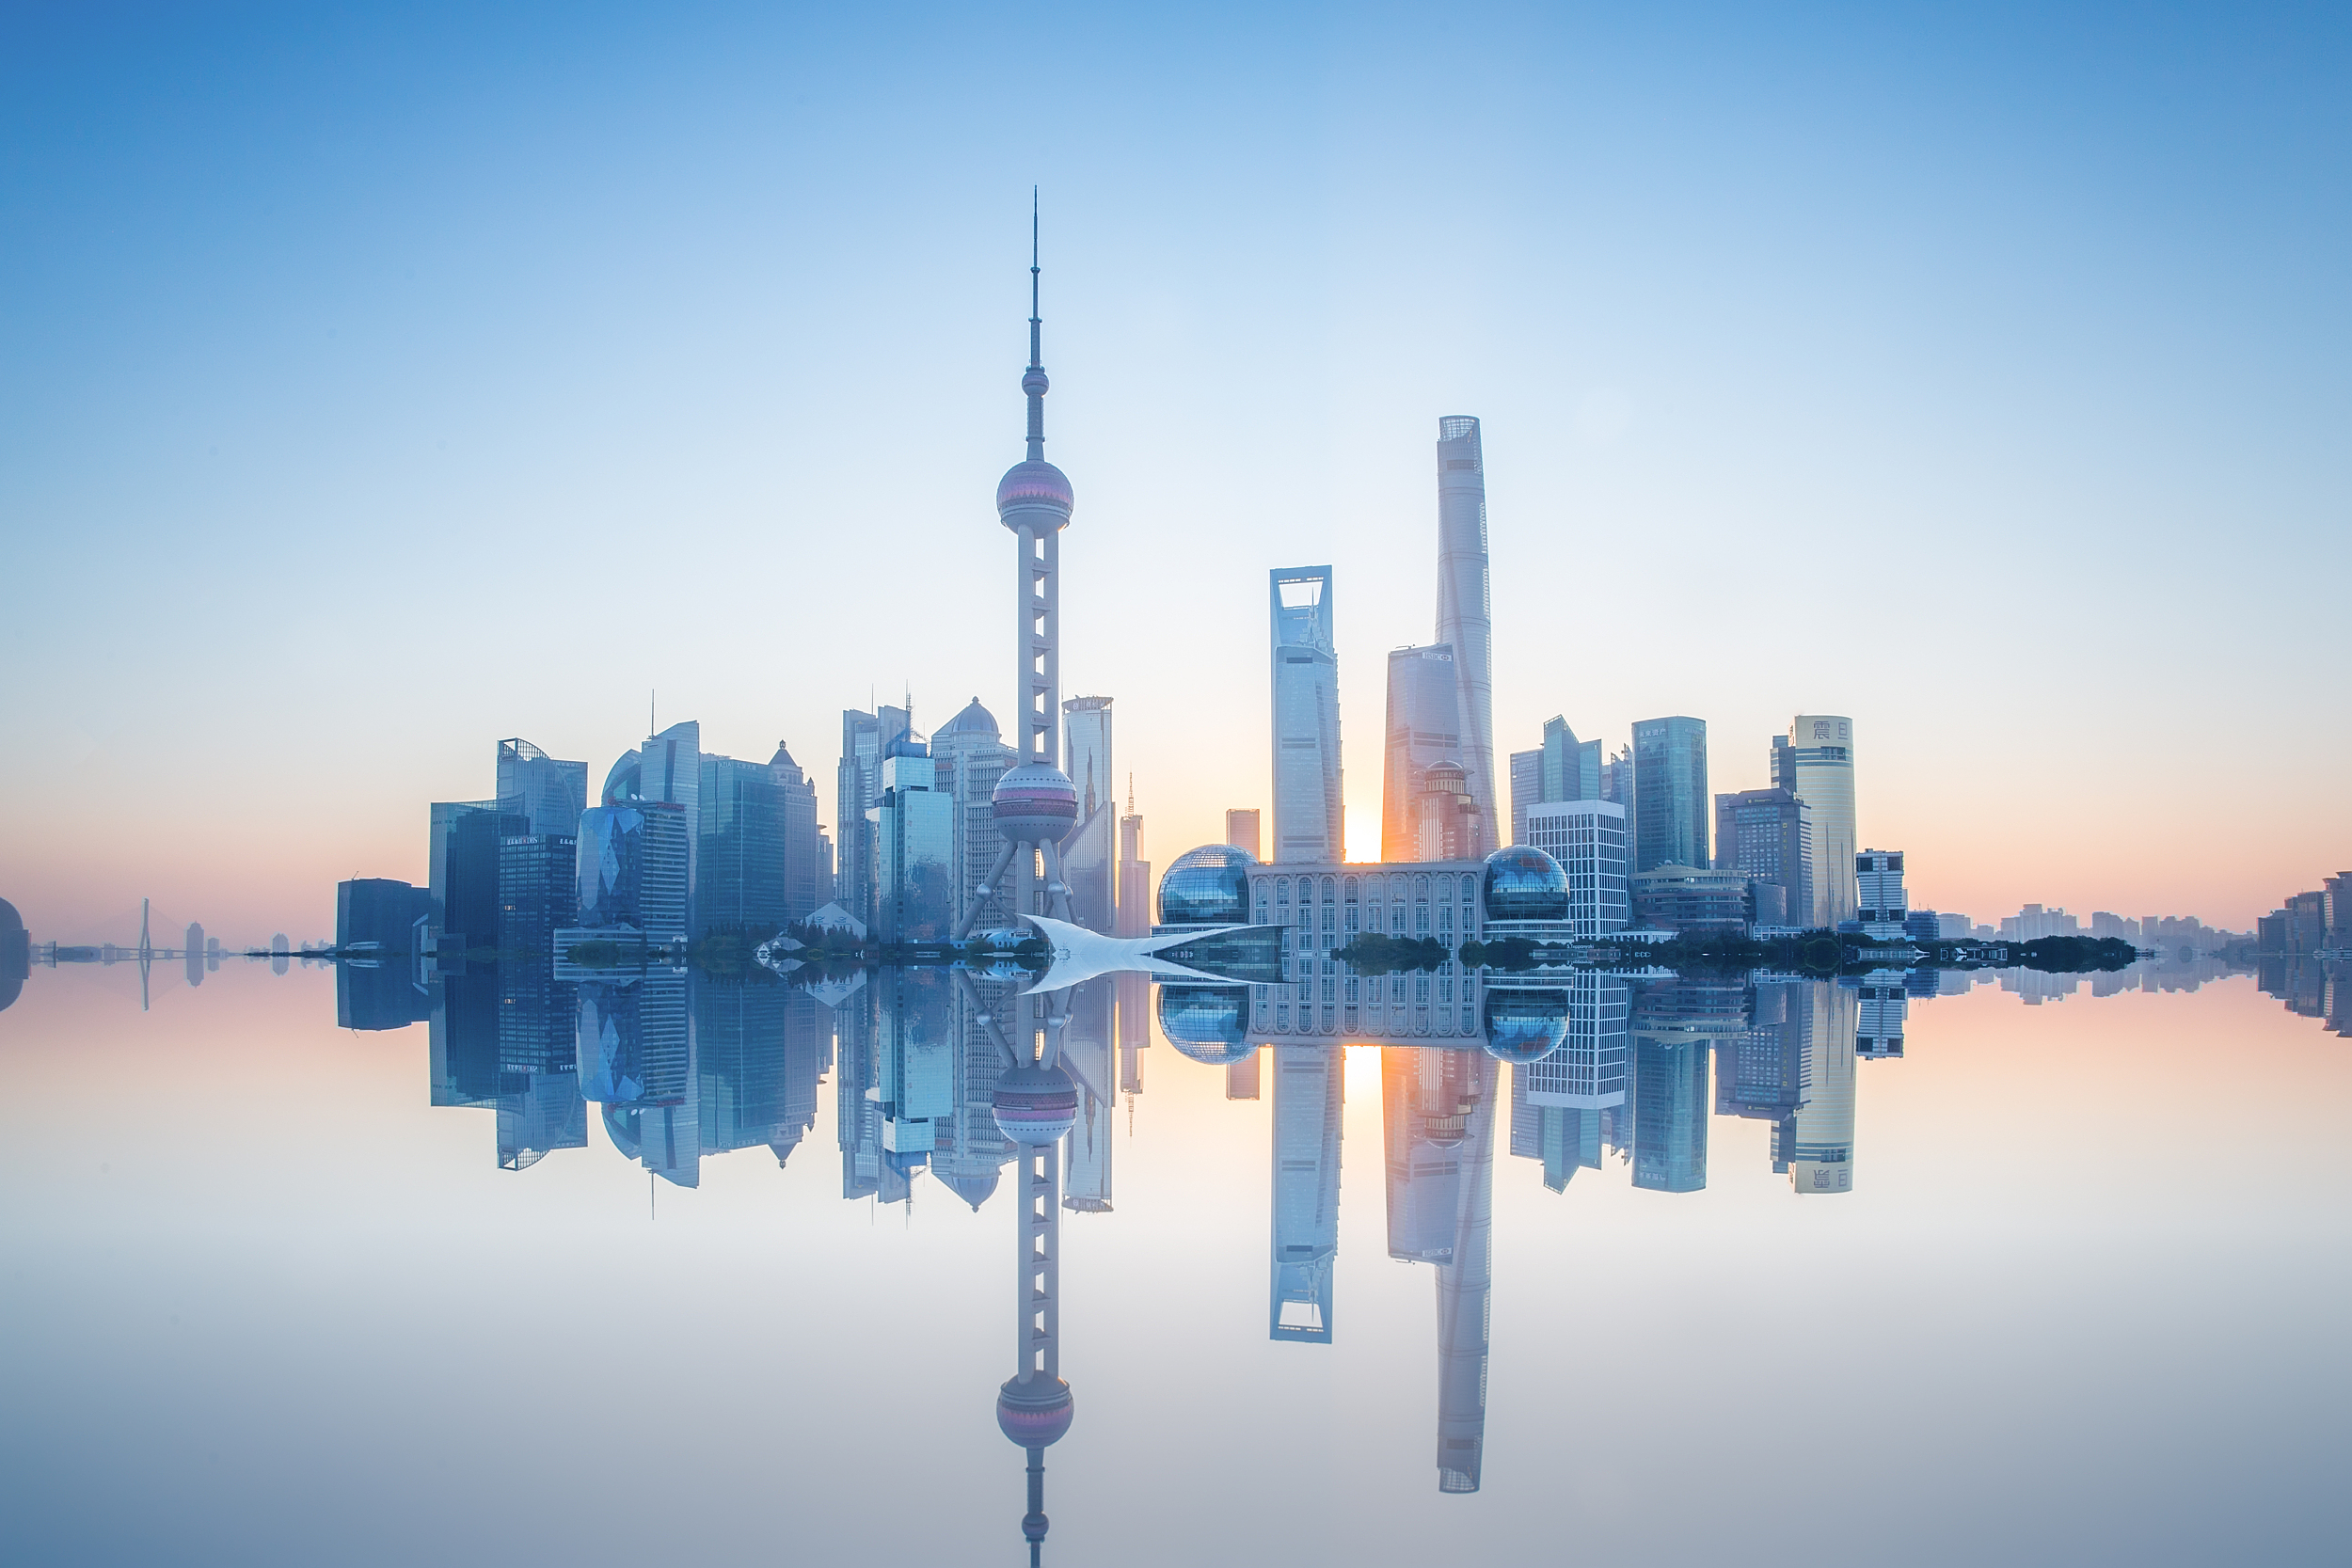 上海市政府常务会议部署推进复工复产和经济恢复，切实促投资、稳外贸、扩消费